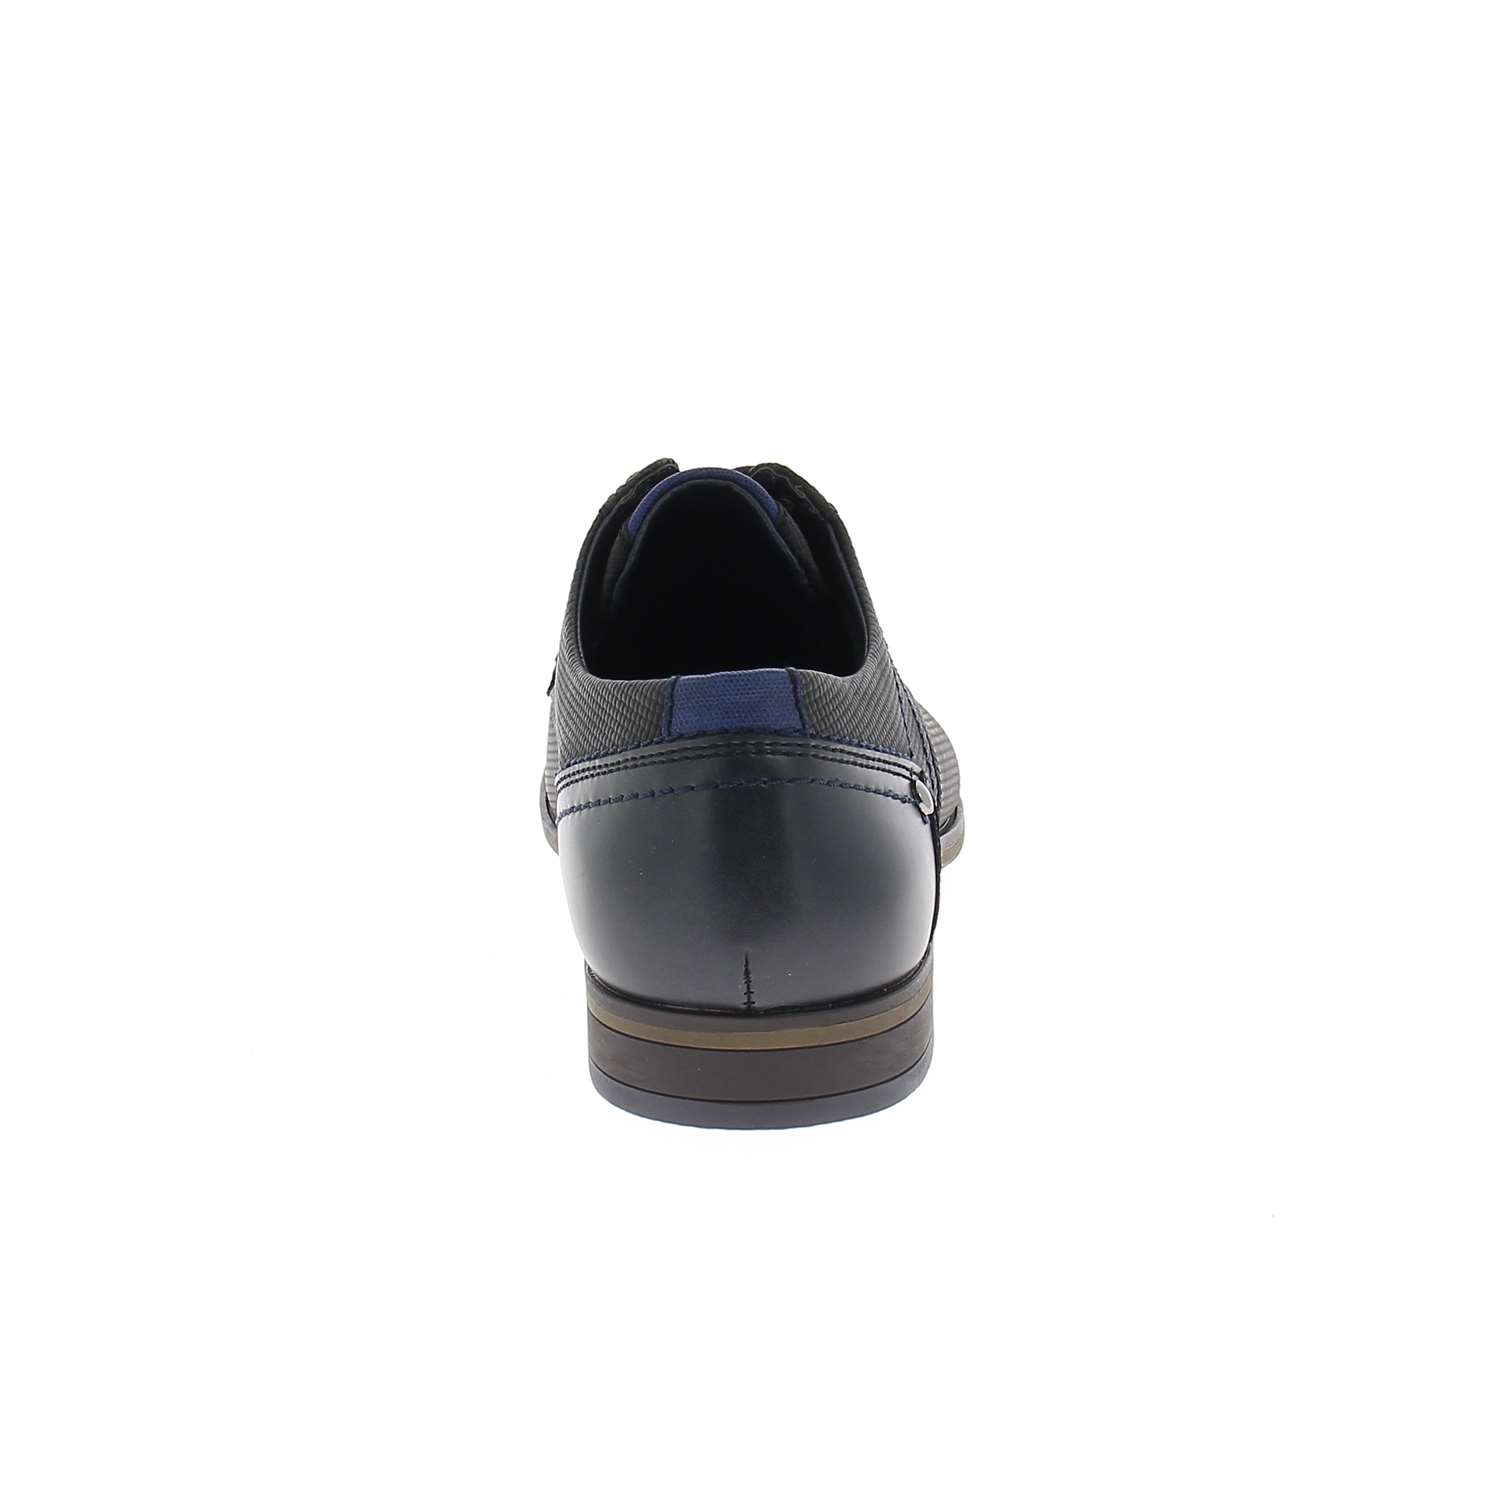 04 - KERGOL     - XAPI - Chaussures à lacets - Textile